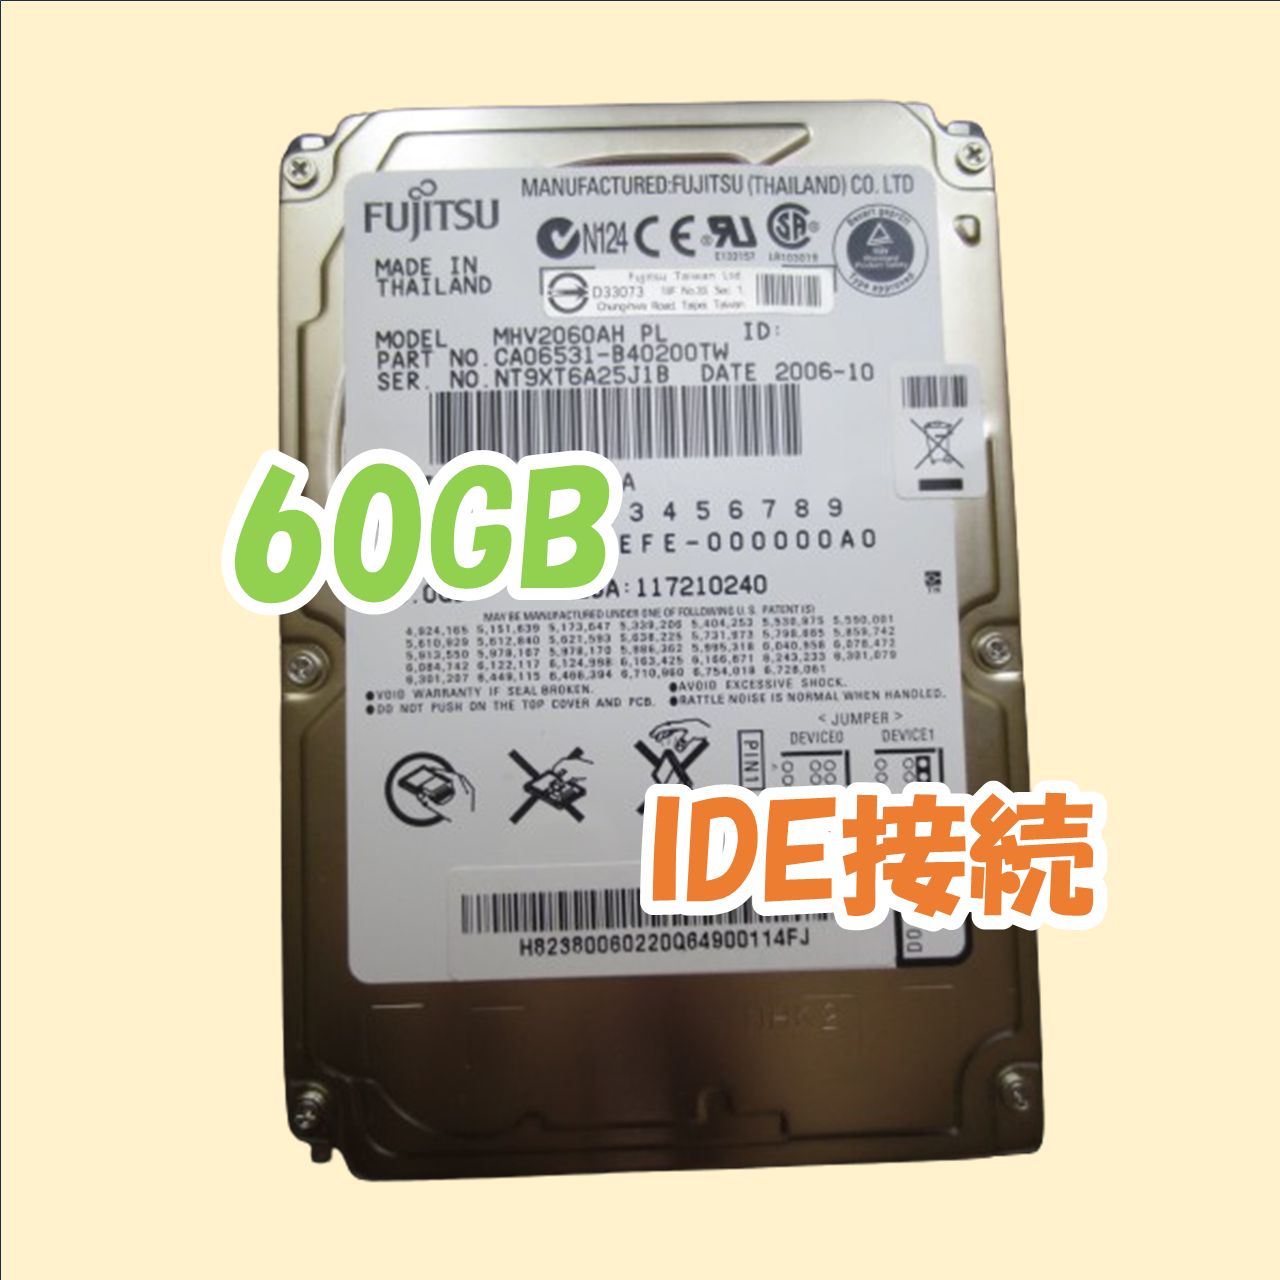 ジャンク】FUJITSU 2.5インチ 9.5mm HDD IDE(Ultra ATA) 60GB MHV2060AH PL - メルカリ